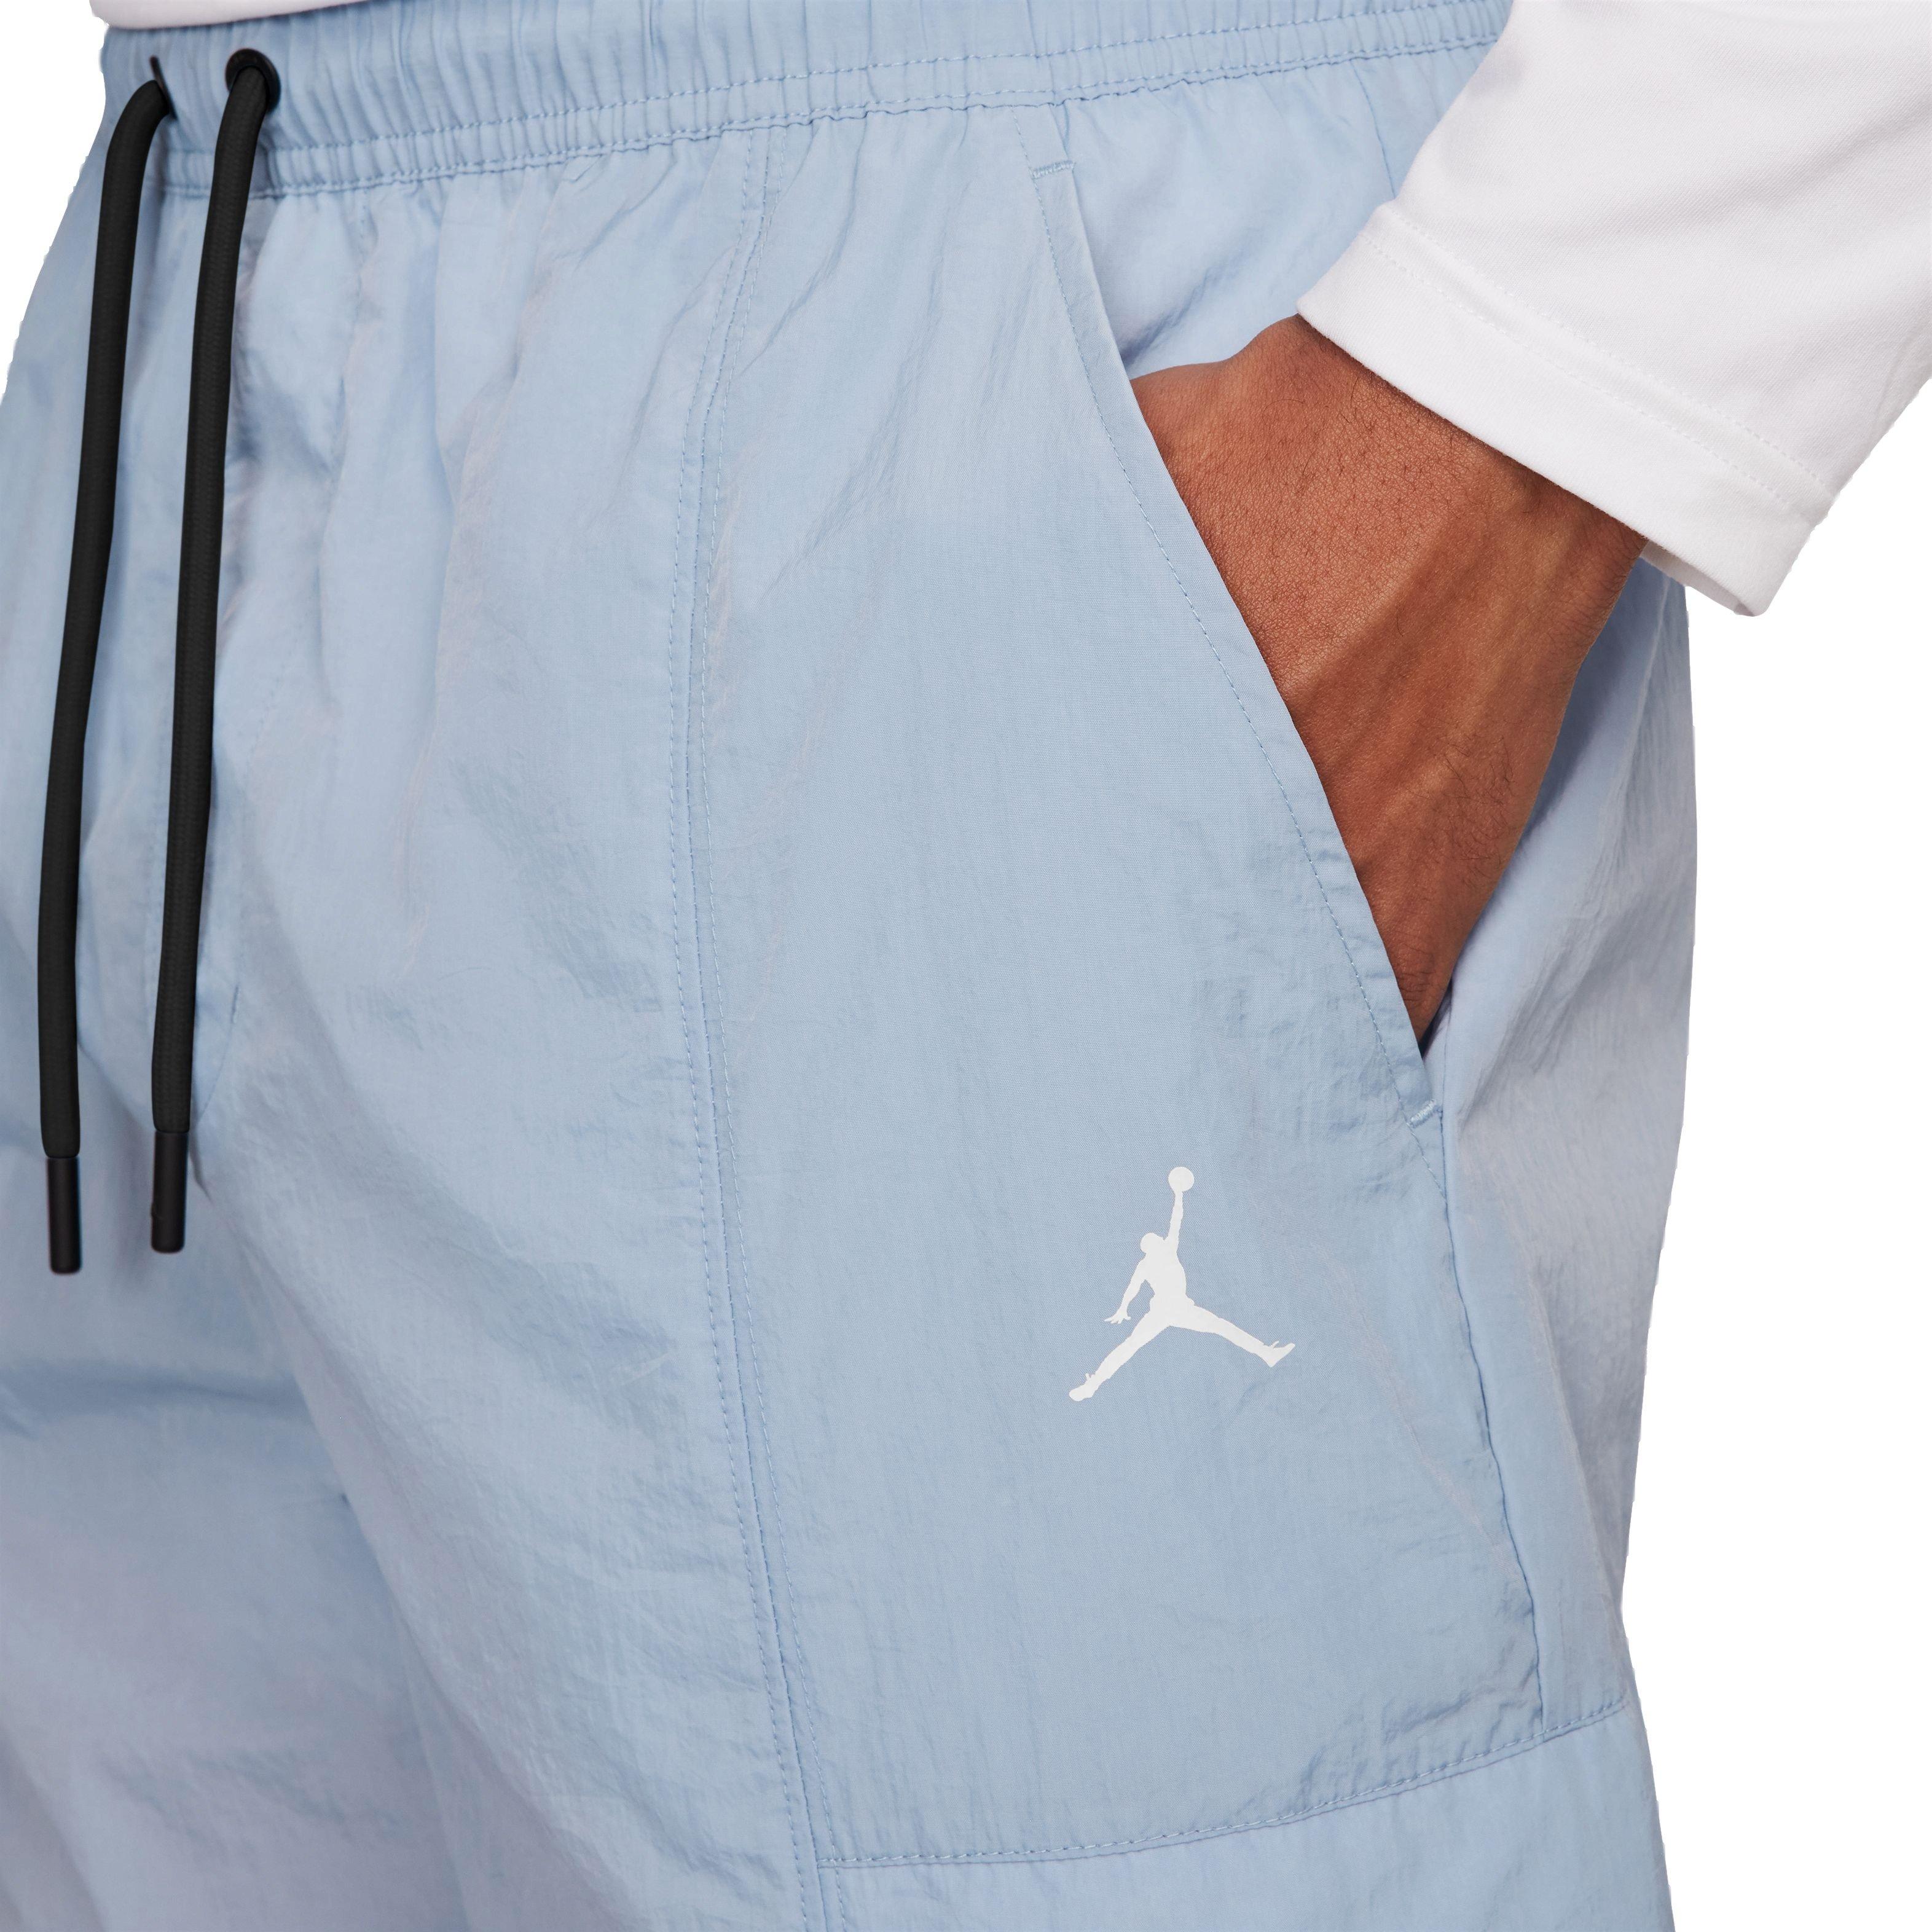 Jordan Men's Essentials Woven Pants-Tan - Hibbett